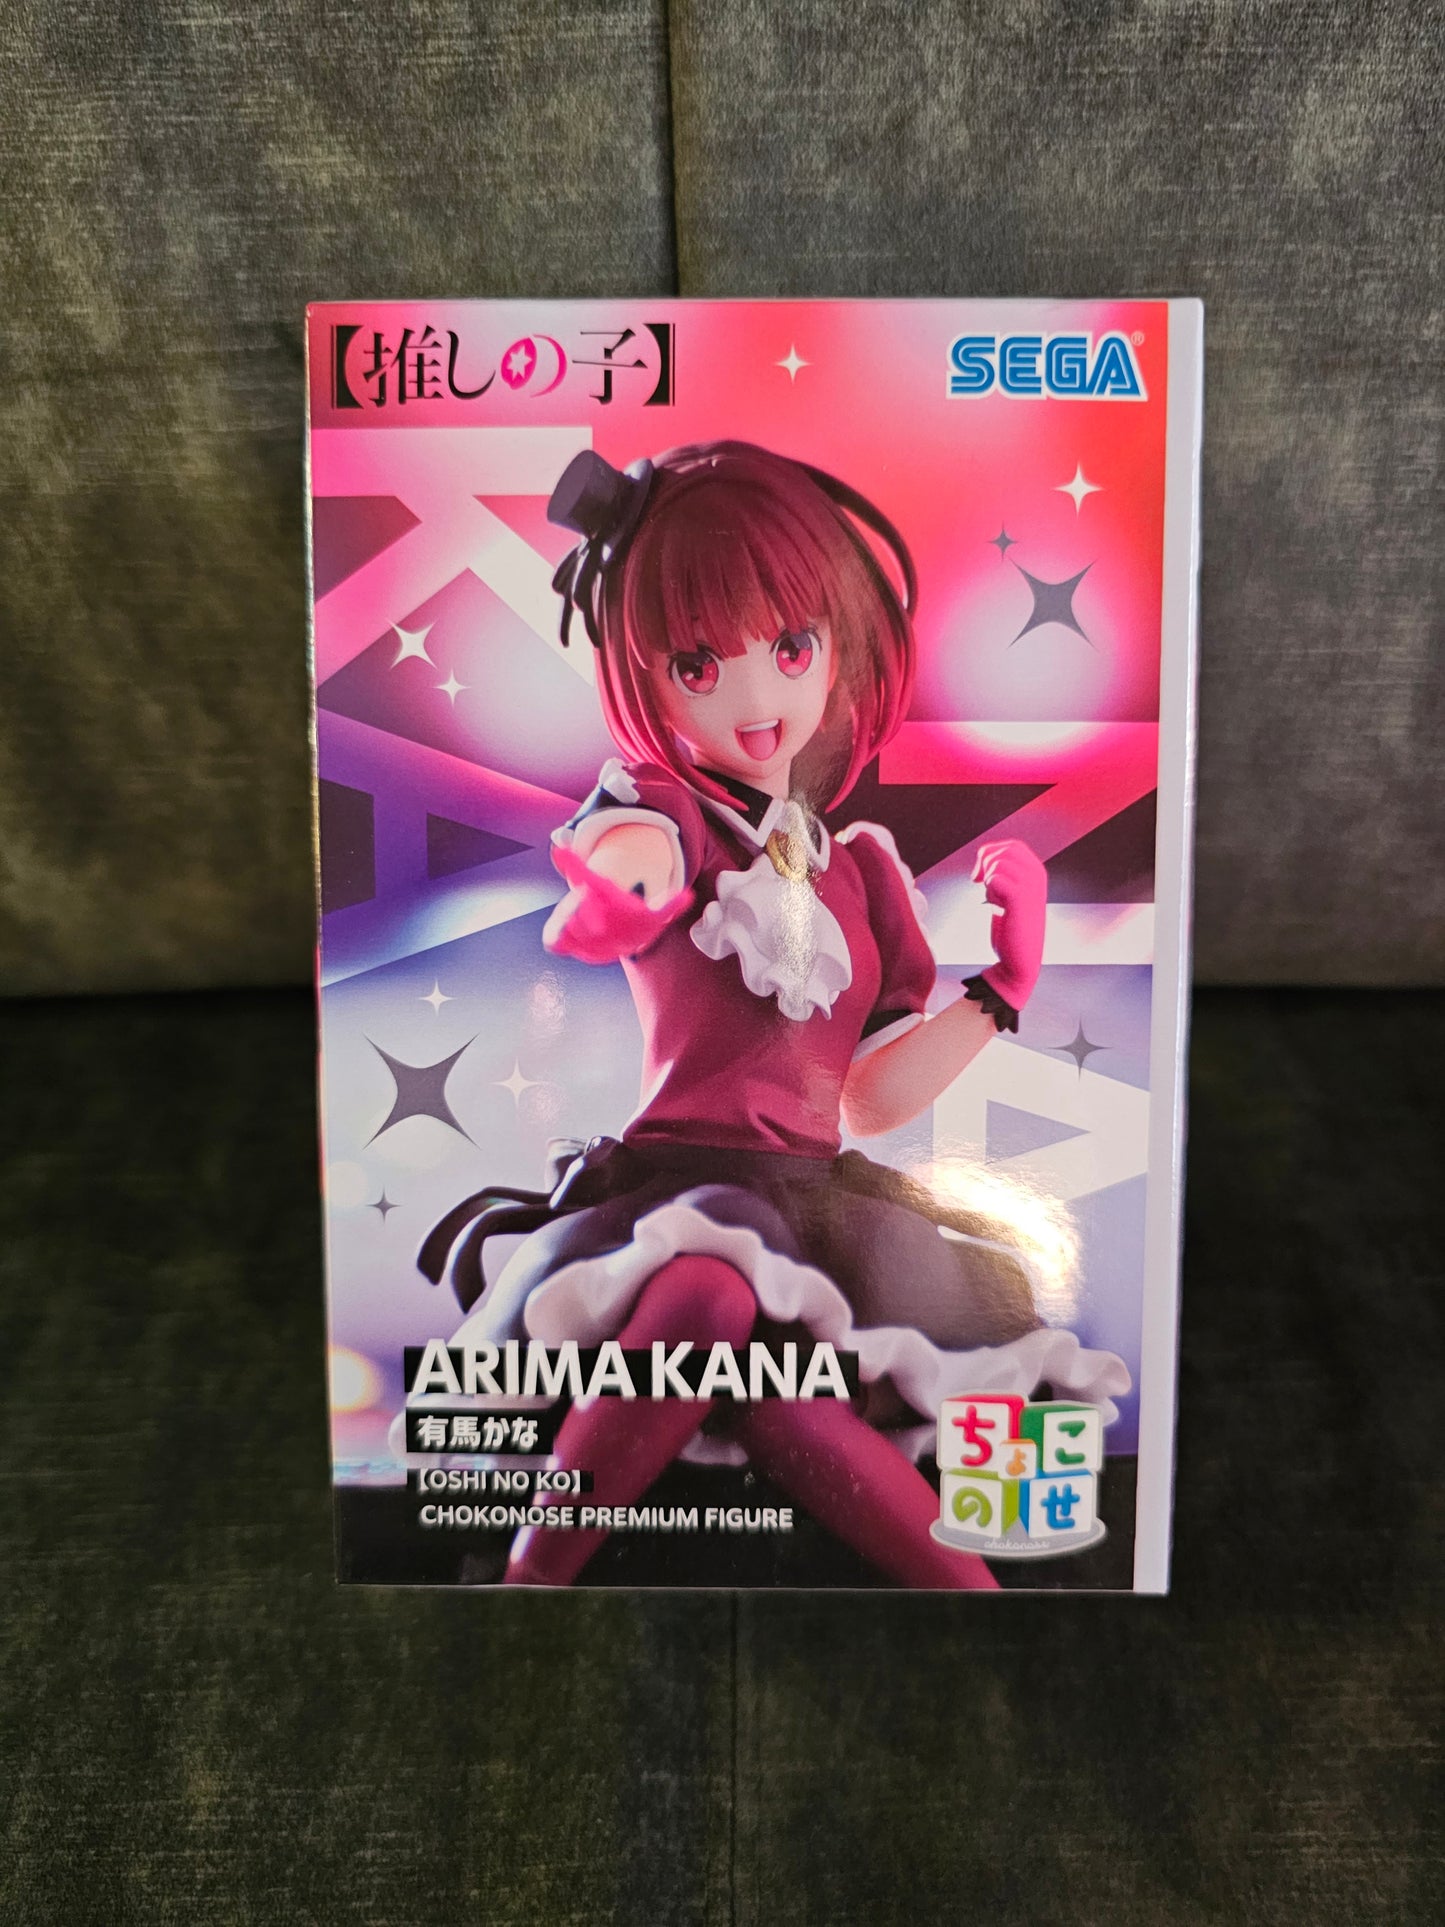 Oshi no Ko: Mein Star - Kana Arima Chokonose - Sega Prize